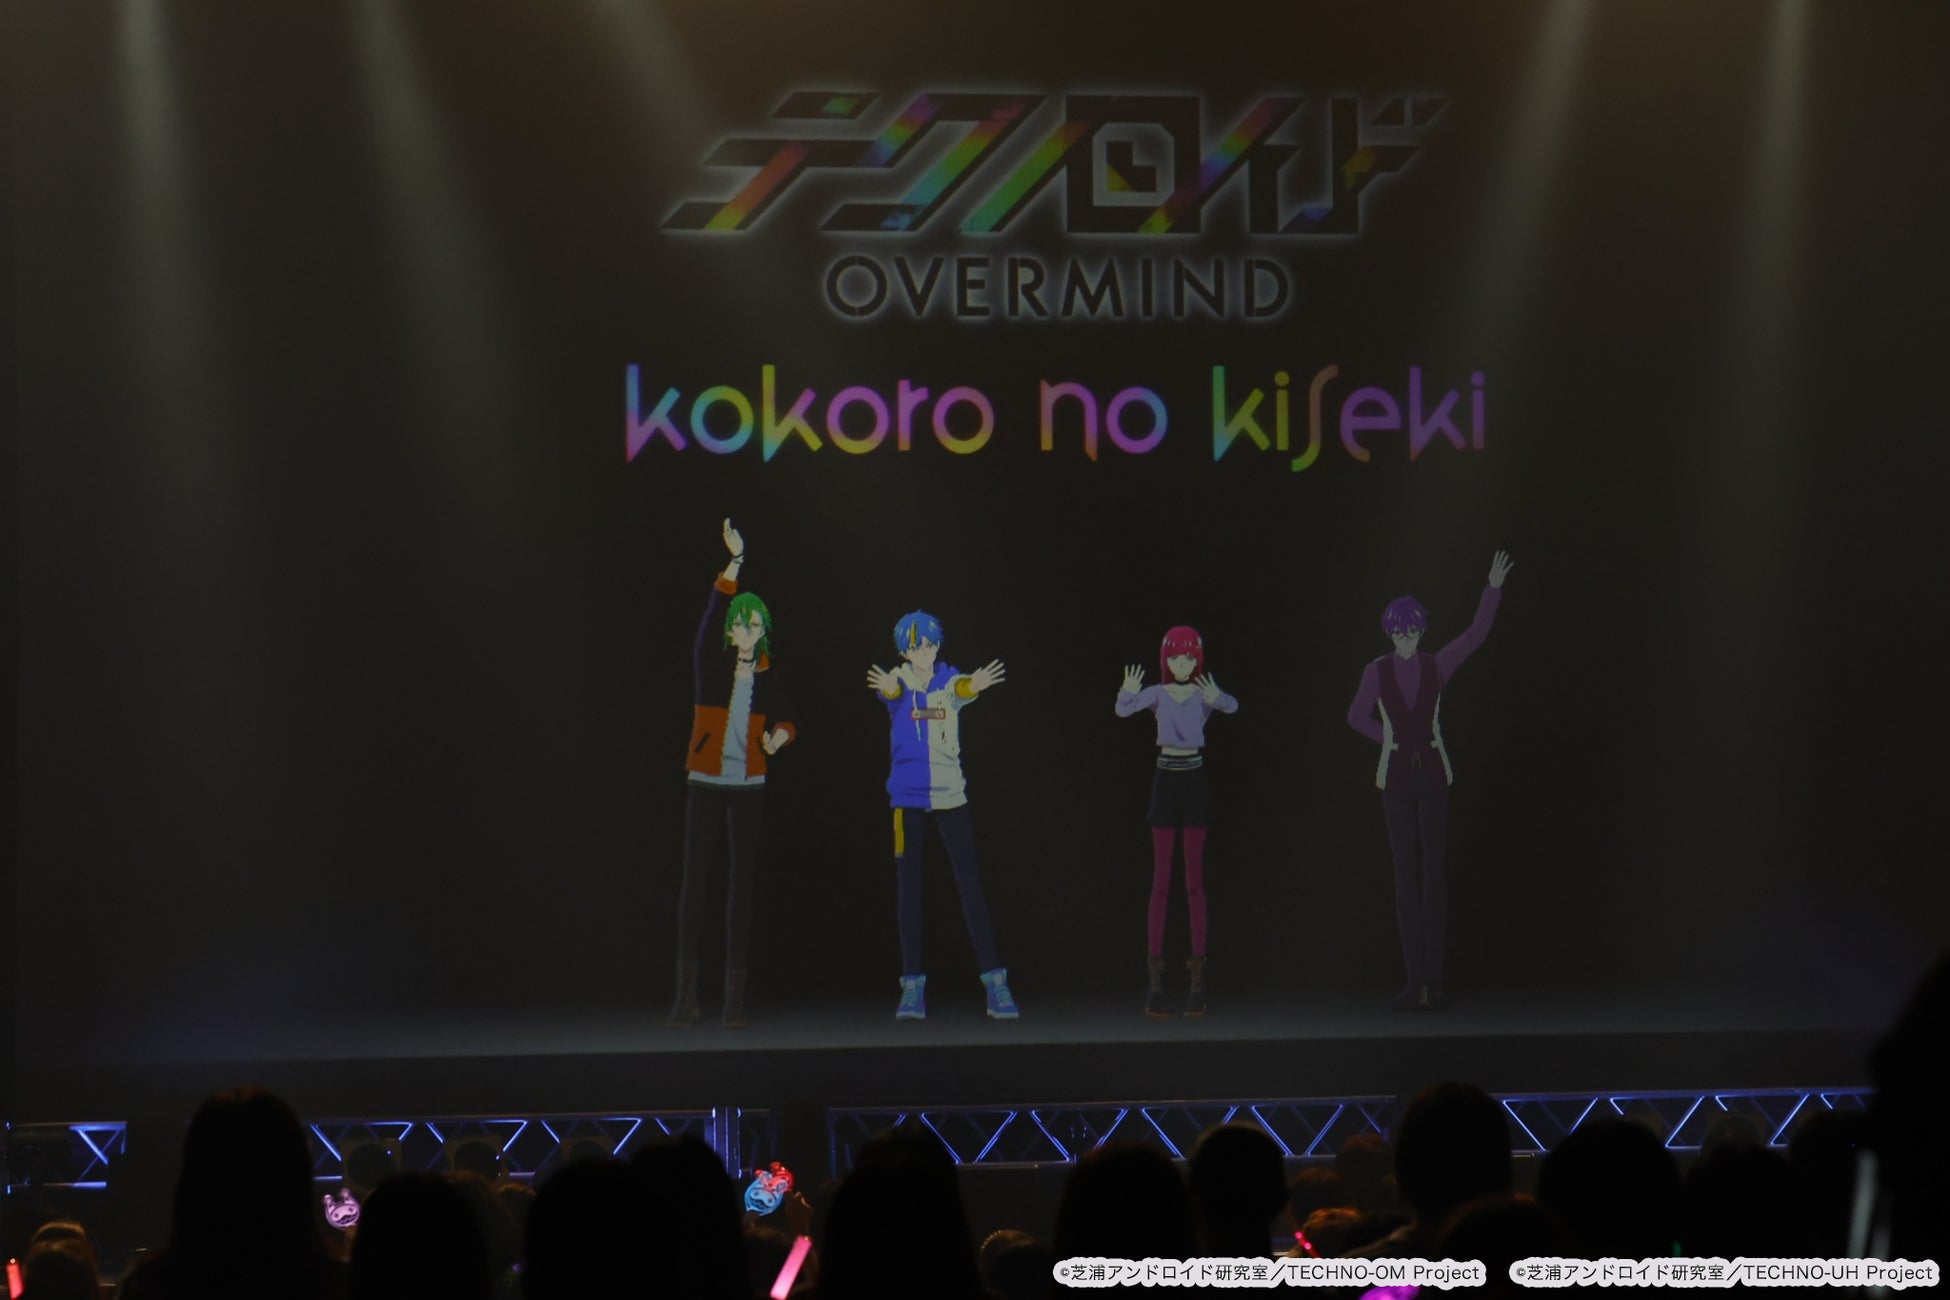 7月15日(土)開催『テクノロイド オーバーマインド』リアルモーションライブ「kokoro no kiseki」の様子をお届け！